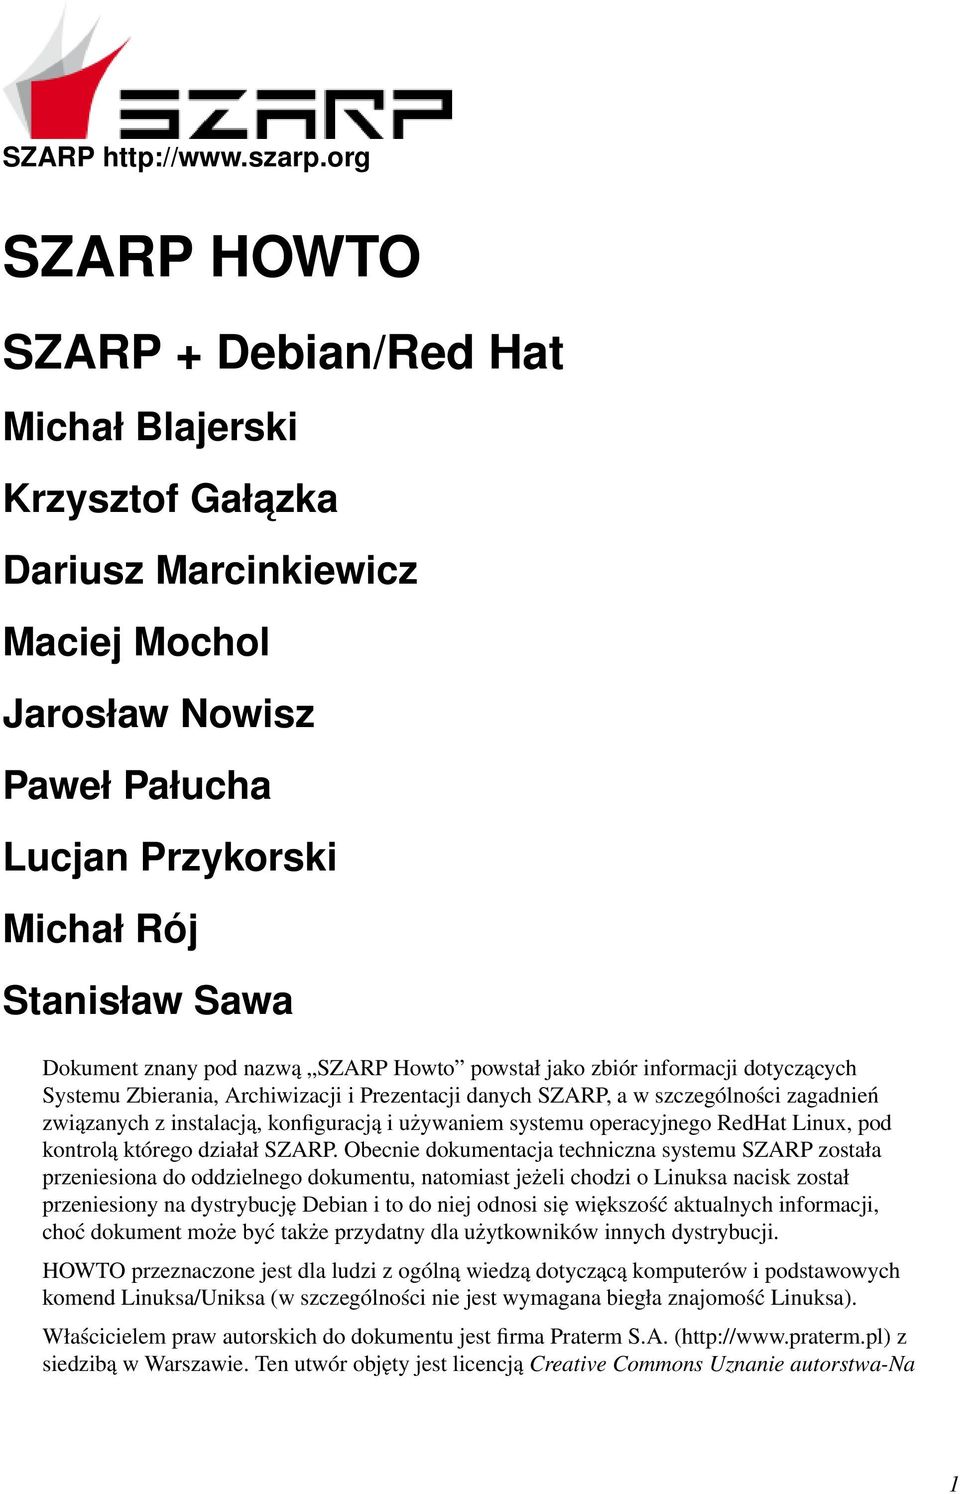 pod nazwą SZARP Howto powstał jako zbiór informacji dotyczących Systemu Zbierania, Archiwizacji i Prezentacji danych SZARP, a w szczególności zagadnień związanych z instalacją, konfiguracją i